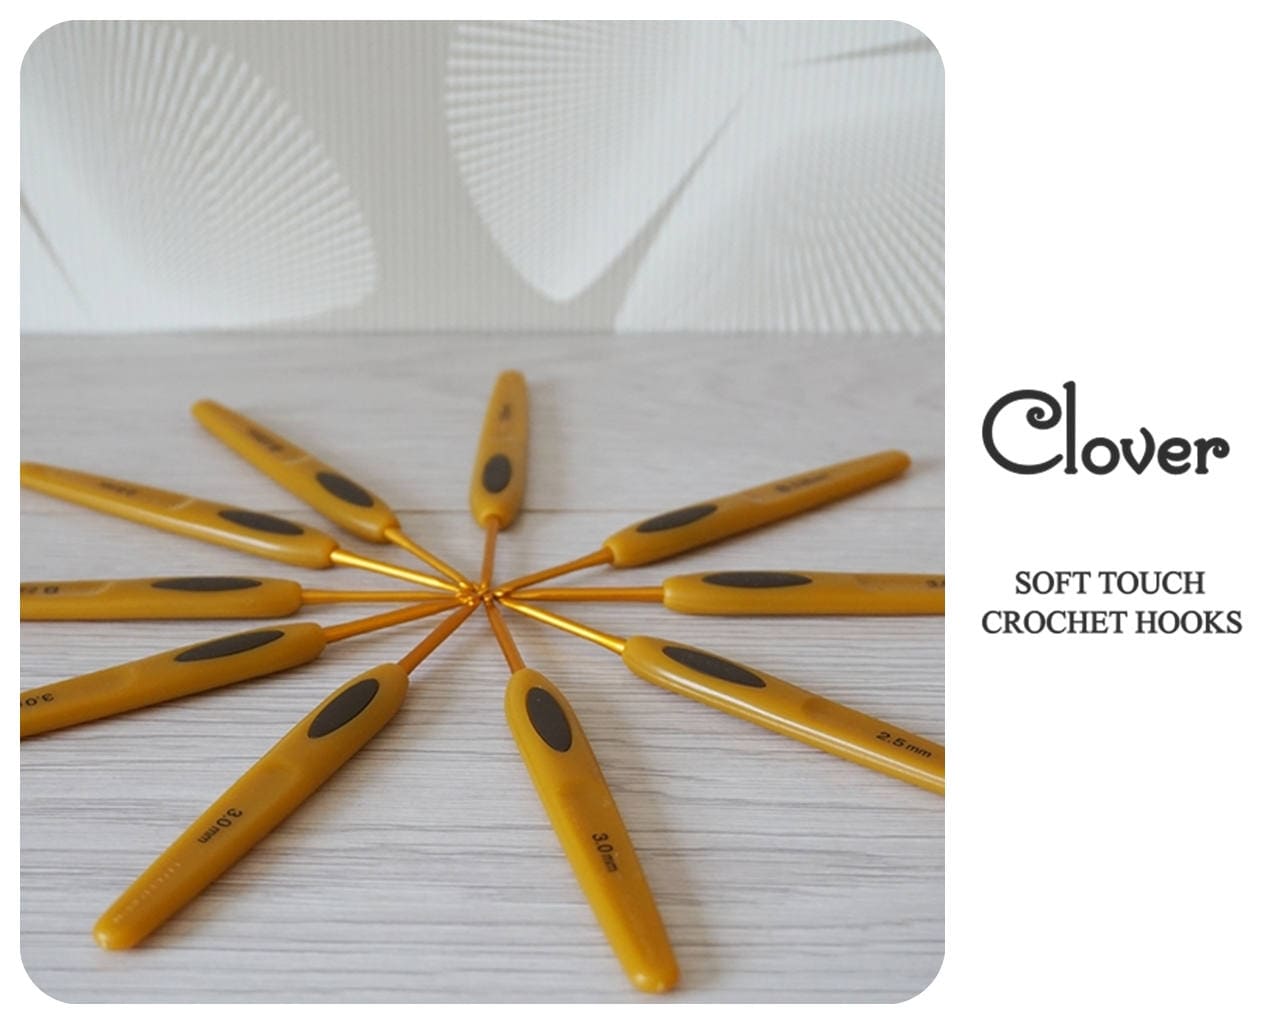 Clover Crochet Hooks Soft Touch Steel Crochet Hook All Sizes 0.5 Mm to 6 Mm  Easy & Ergonomic Crocheting 